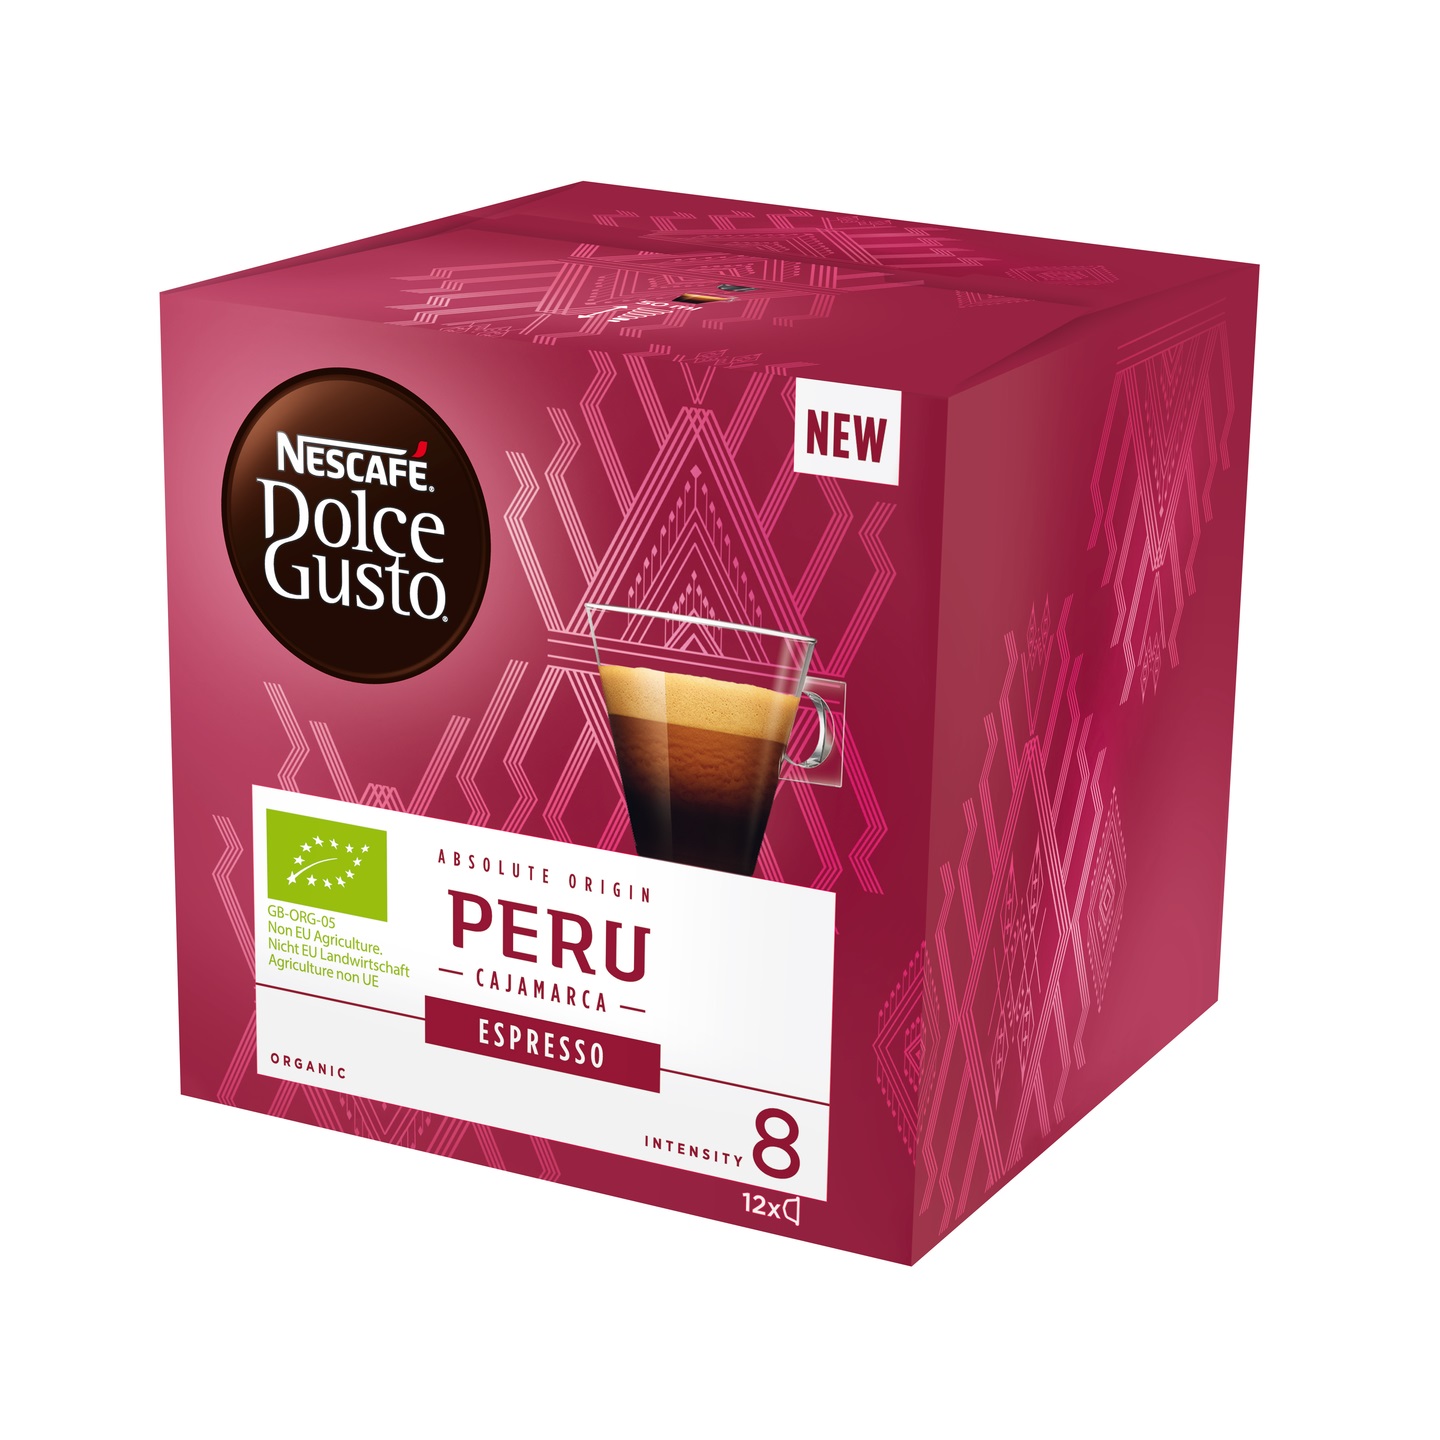 Nescafe D.G Espresso Peru 12 kaps